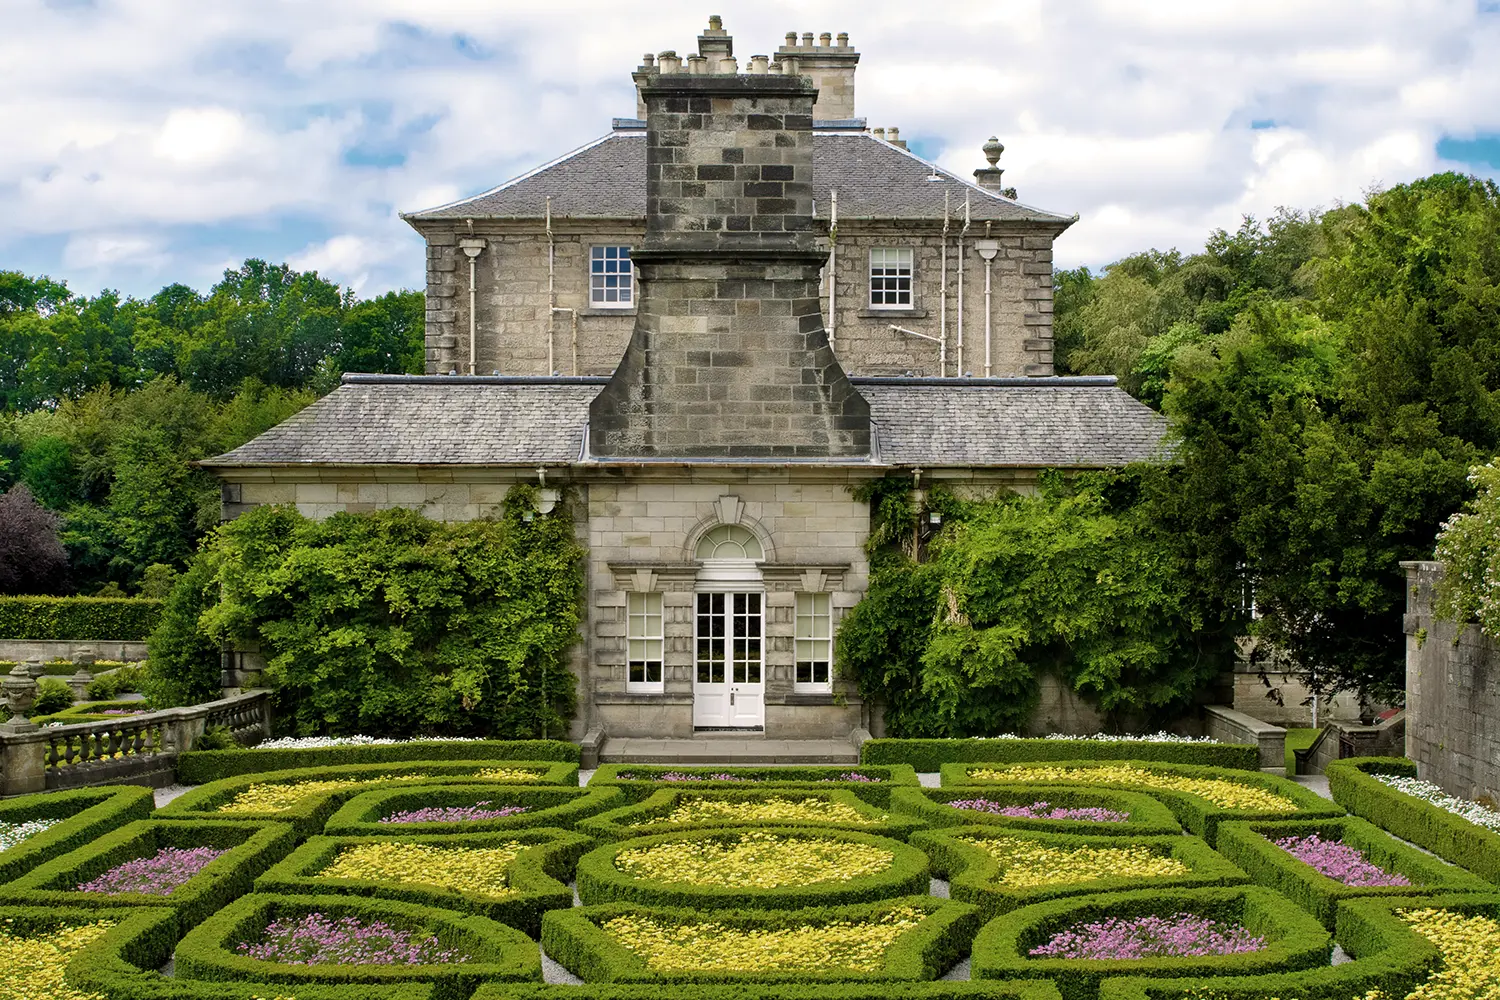 Formal garden at Pollok House in Pollok Country Park, Scotland